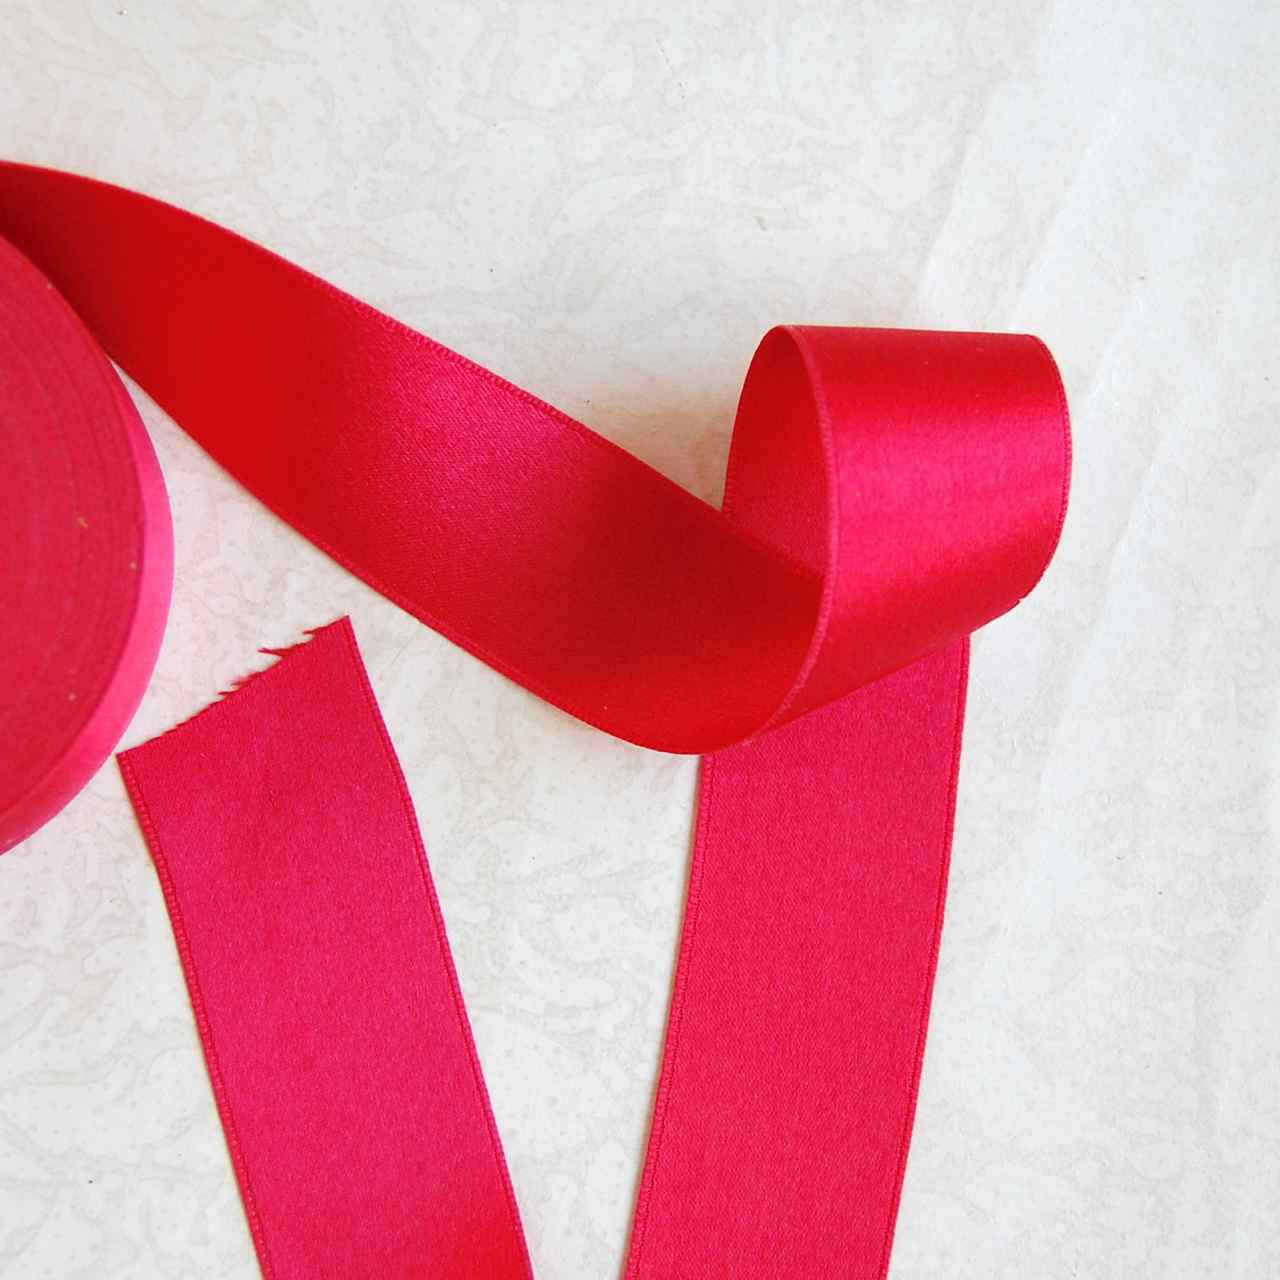 100% Silk Double Faced Satin Ribbon, White, 1 inch • Promenade